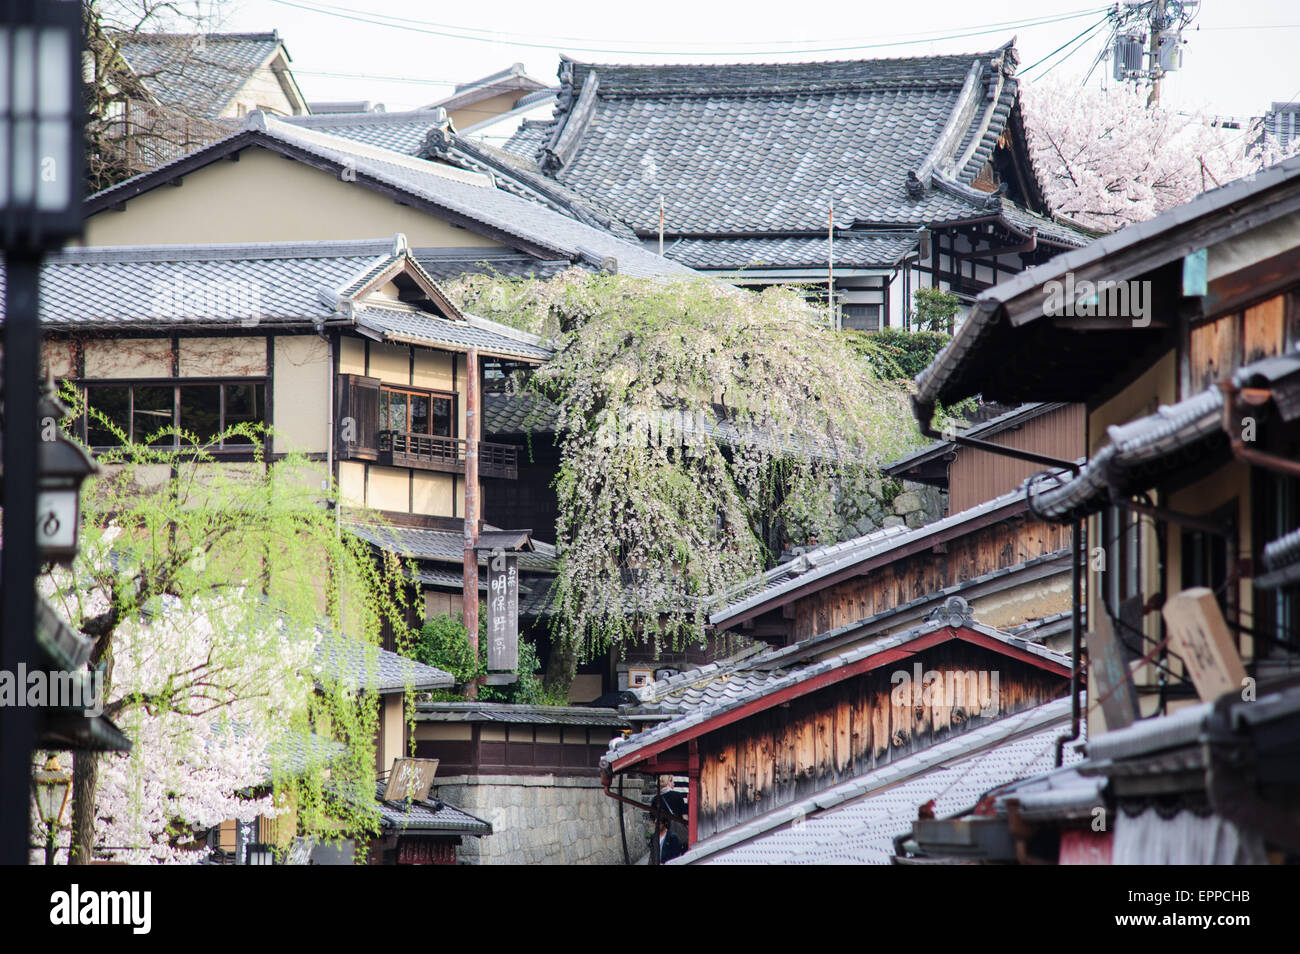 La città vecchia di Kyoto in Giappone con le tradizionali case in legno e tipici tetti in giapponese con fiori di ciliegio Foto Stock